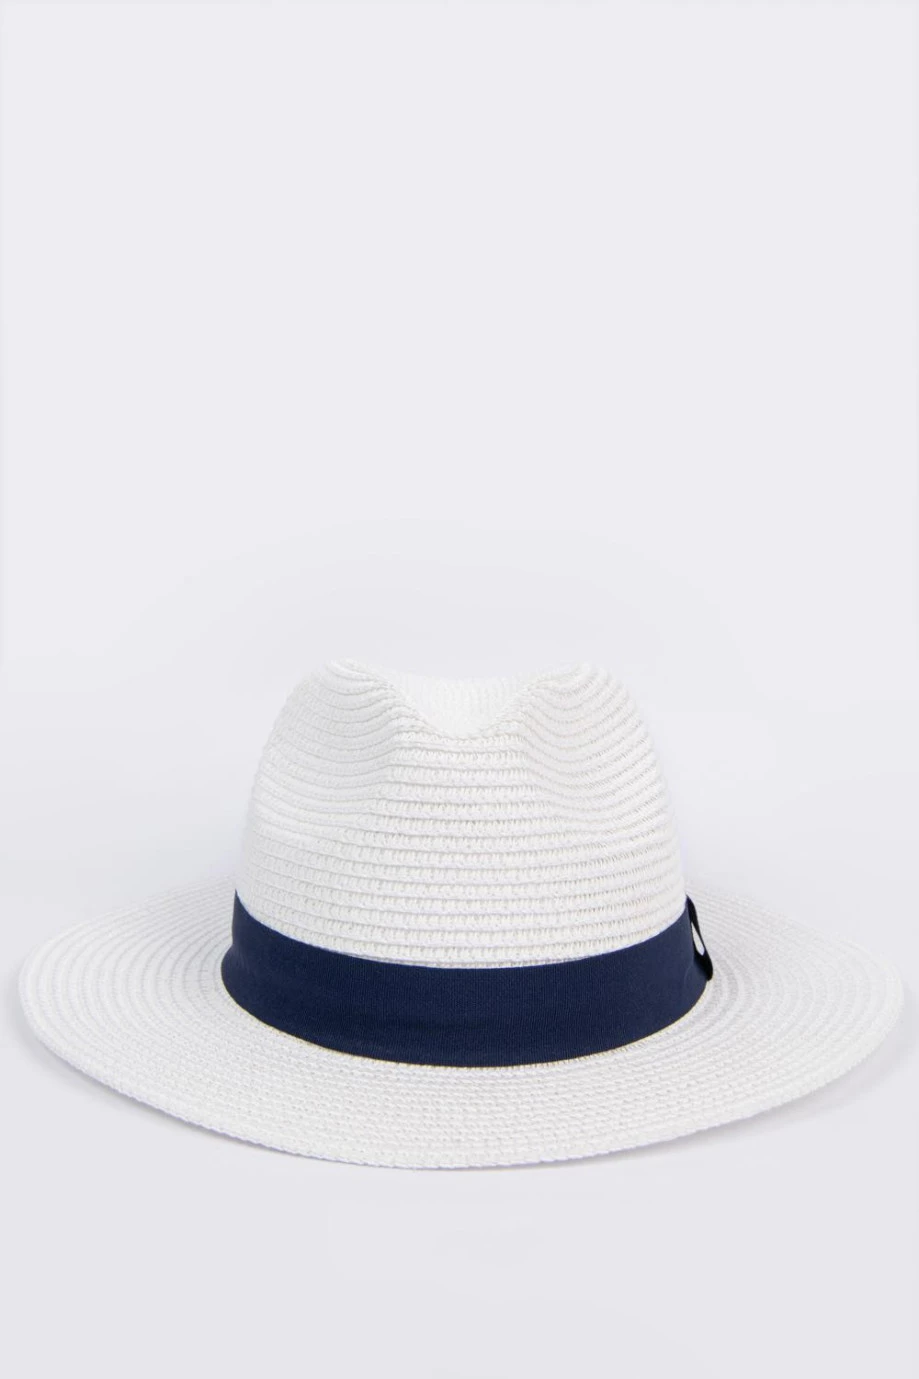 Sombrero fedora crema claro con cinta azul decorativa